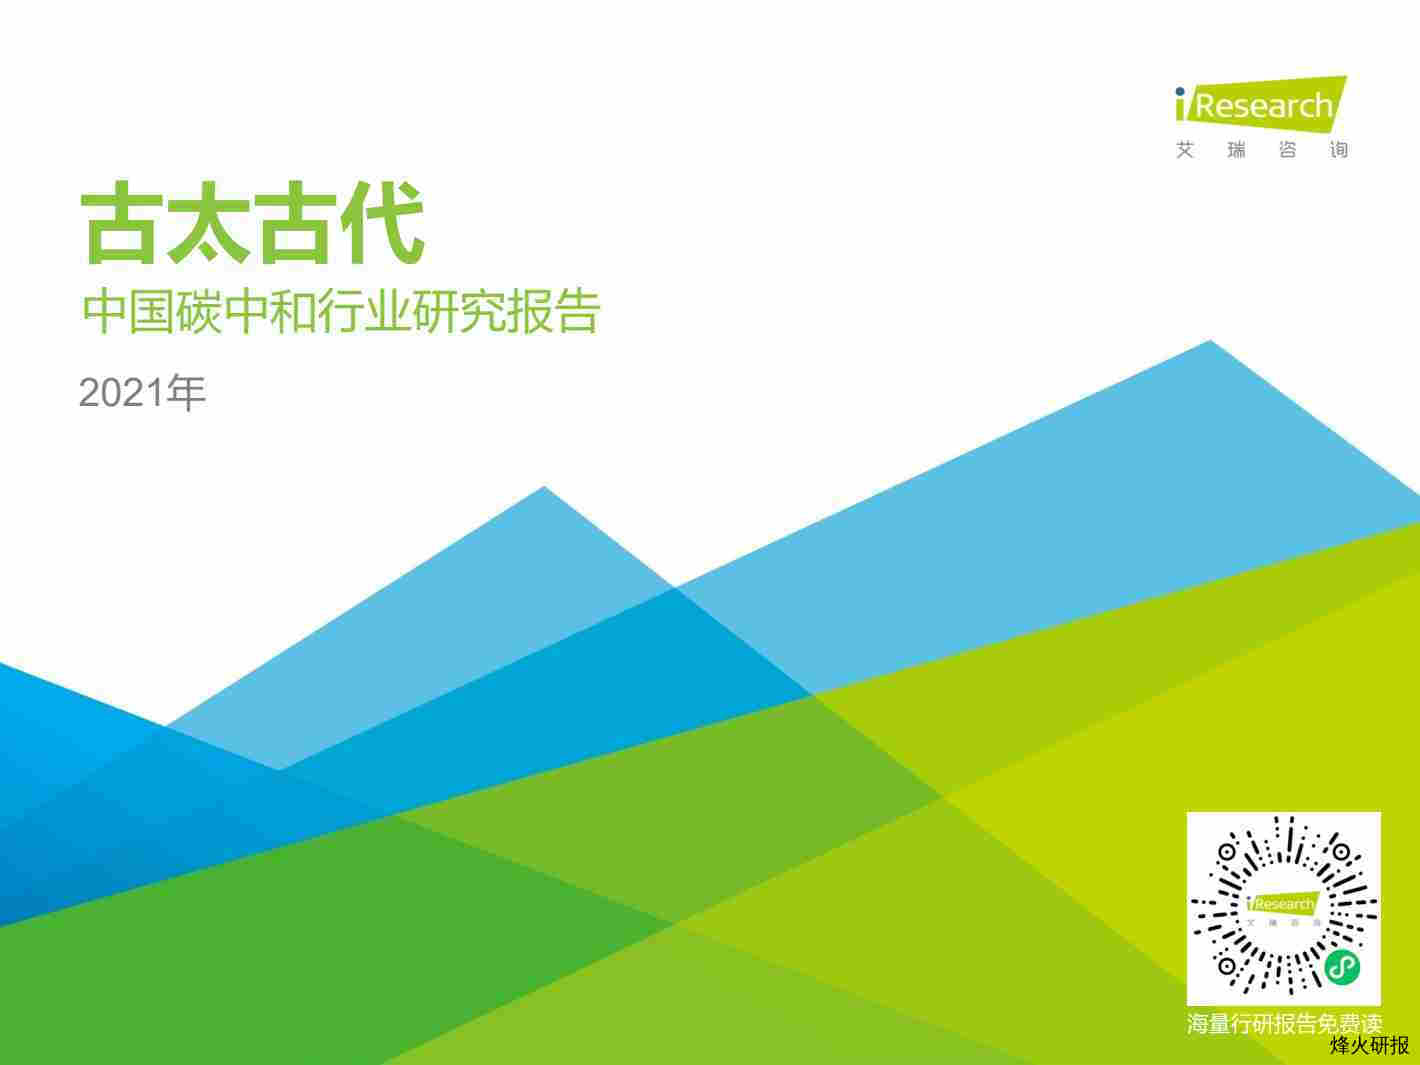 【艾瑞】2021年中国碳中和行业研究报告.pdf-第一页